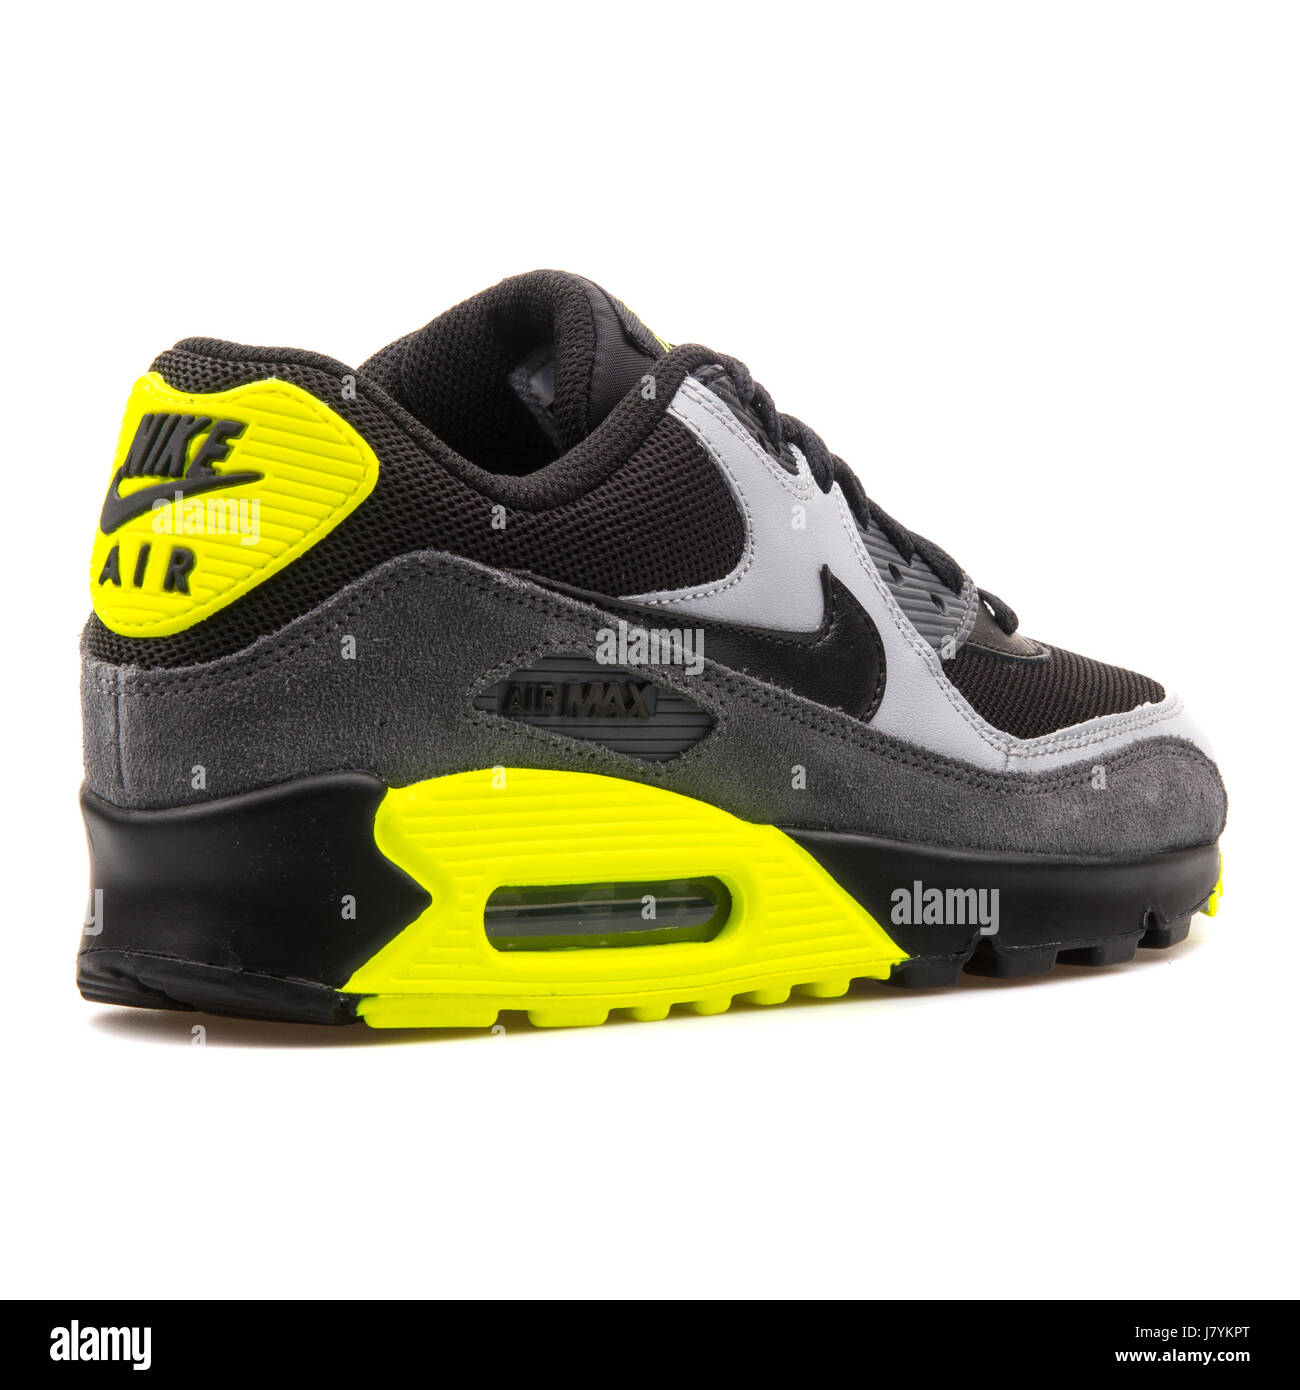 Nike Air Max 90 GS (Mesh) Les jeunes Noirs Gris et Jaune - 724824-002  chaussures de cuir Photo Stock - Alamy